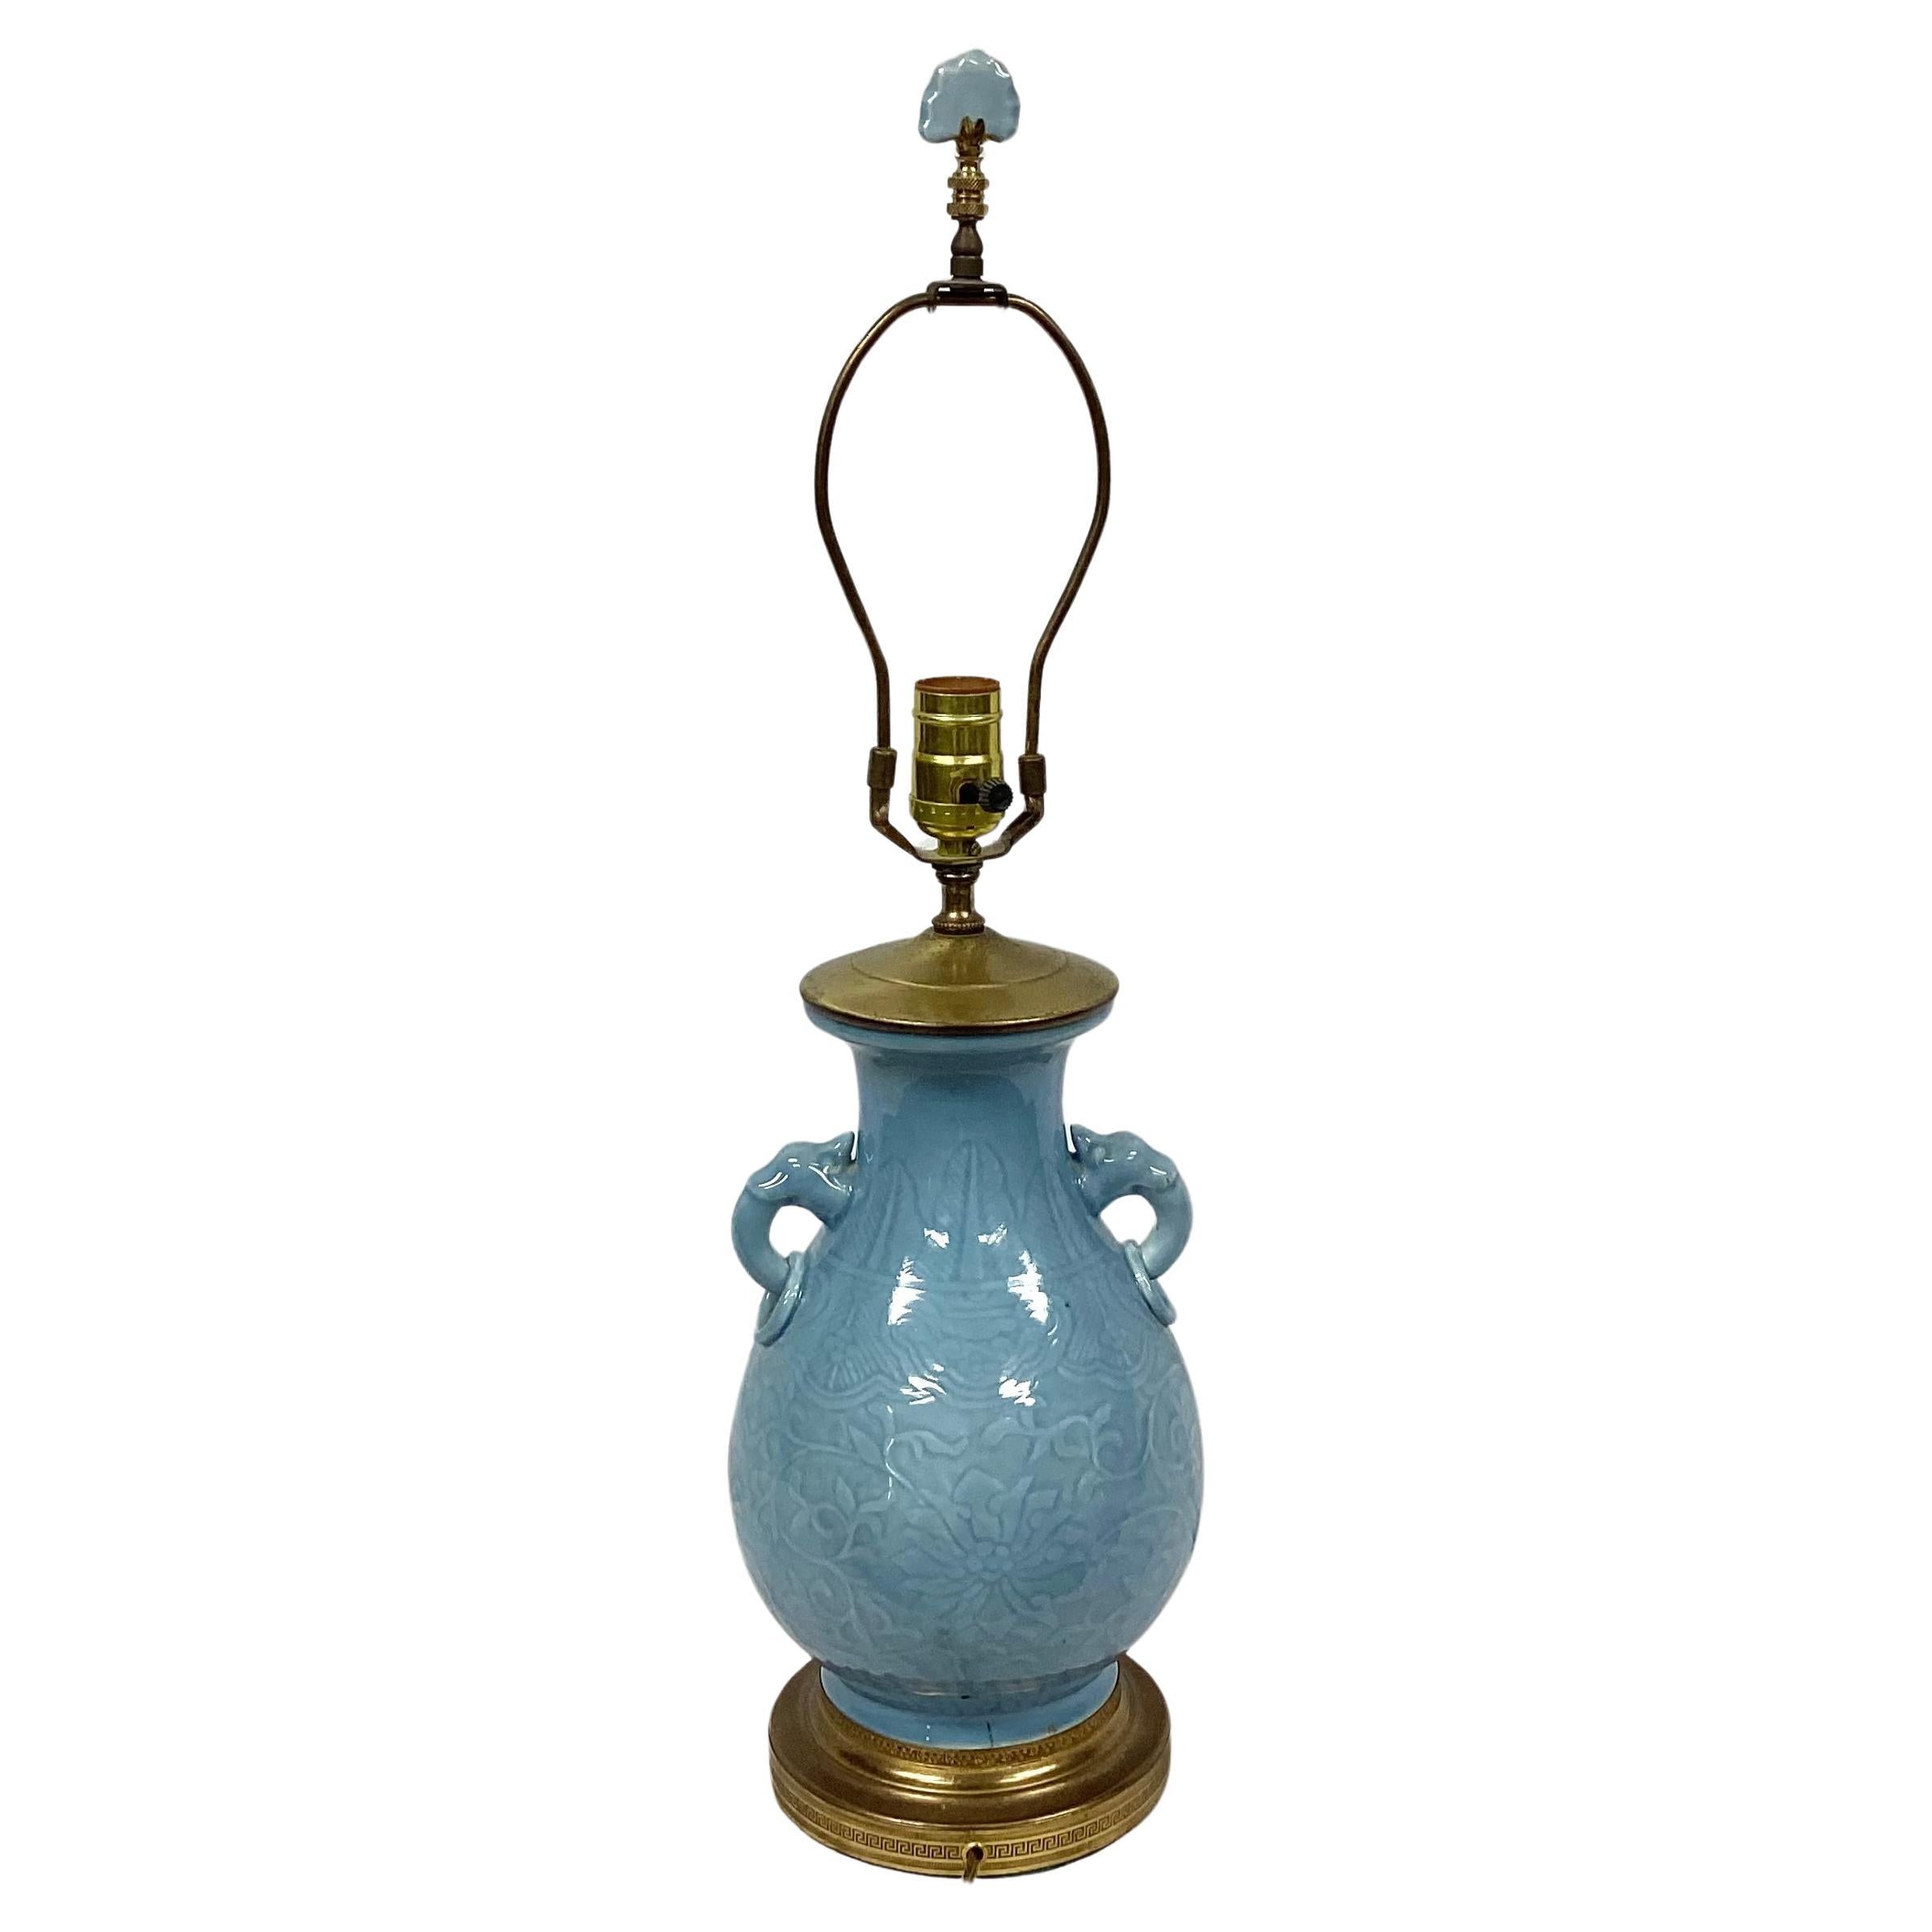 Lampe chinoise du milieu du 20e siècle en porcelaine céladon montée sur laiton doré, avec poignées en anneau d'éléphant moulées et épi de faîtage assorti. Harpe et fleuron inclus. Motif floral bleu moulé sur toute la lampe. Monté sur une base en